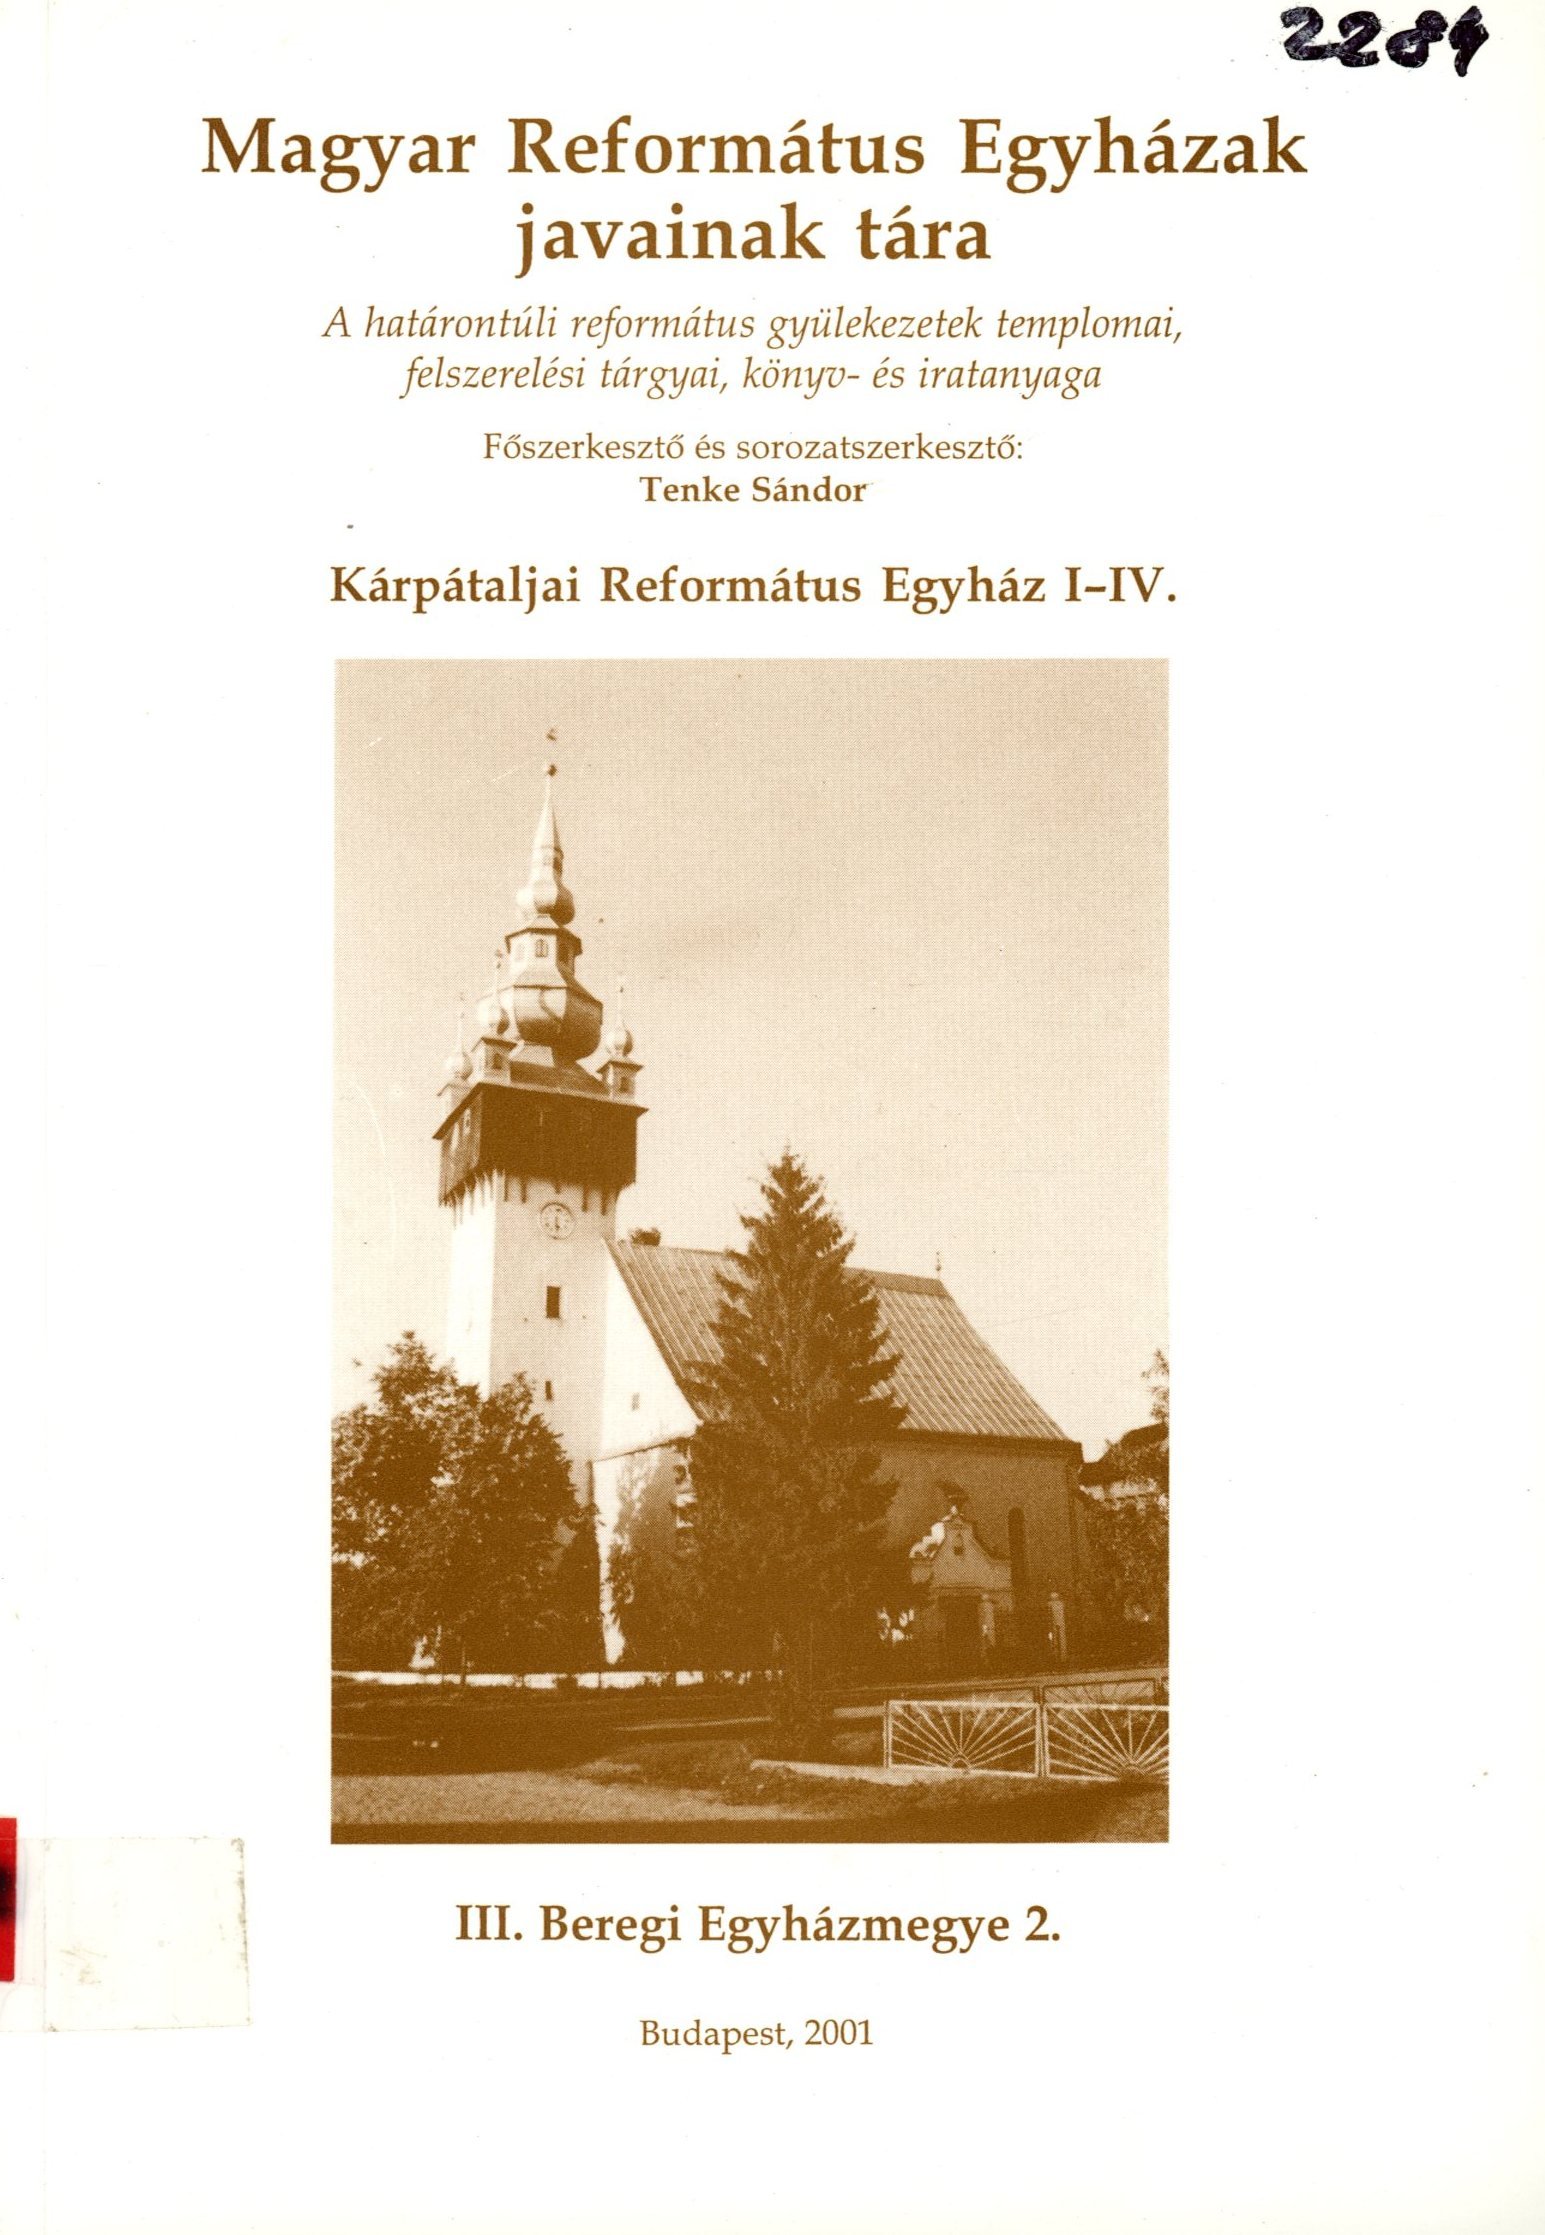 Magyar Református Egyházak javainak tára (Erkel Ferenc Múzeum és Könyvtár, Gyula CC BY-NC-SA)